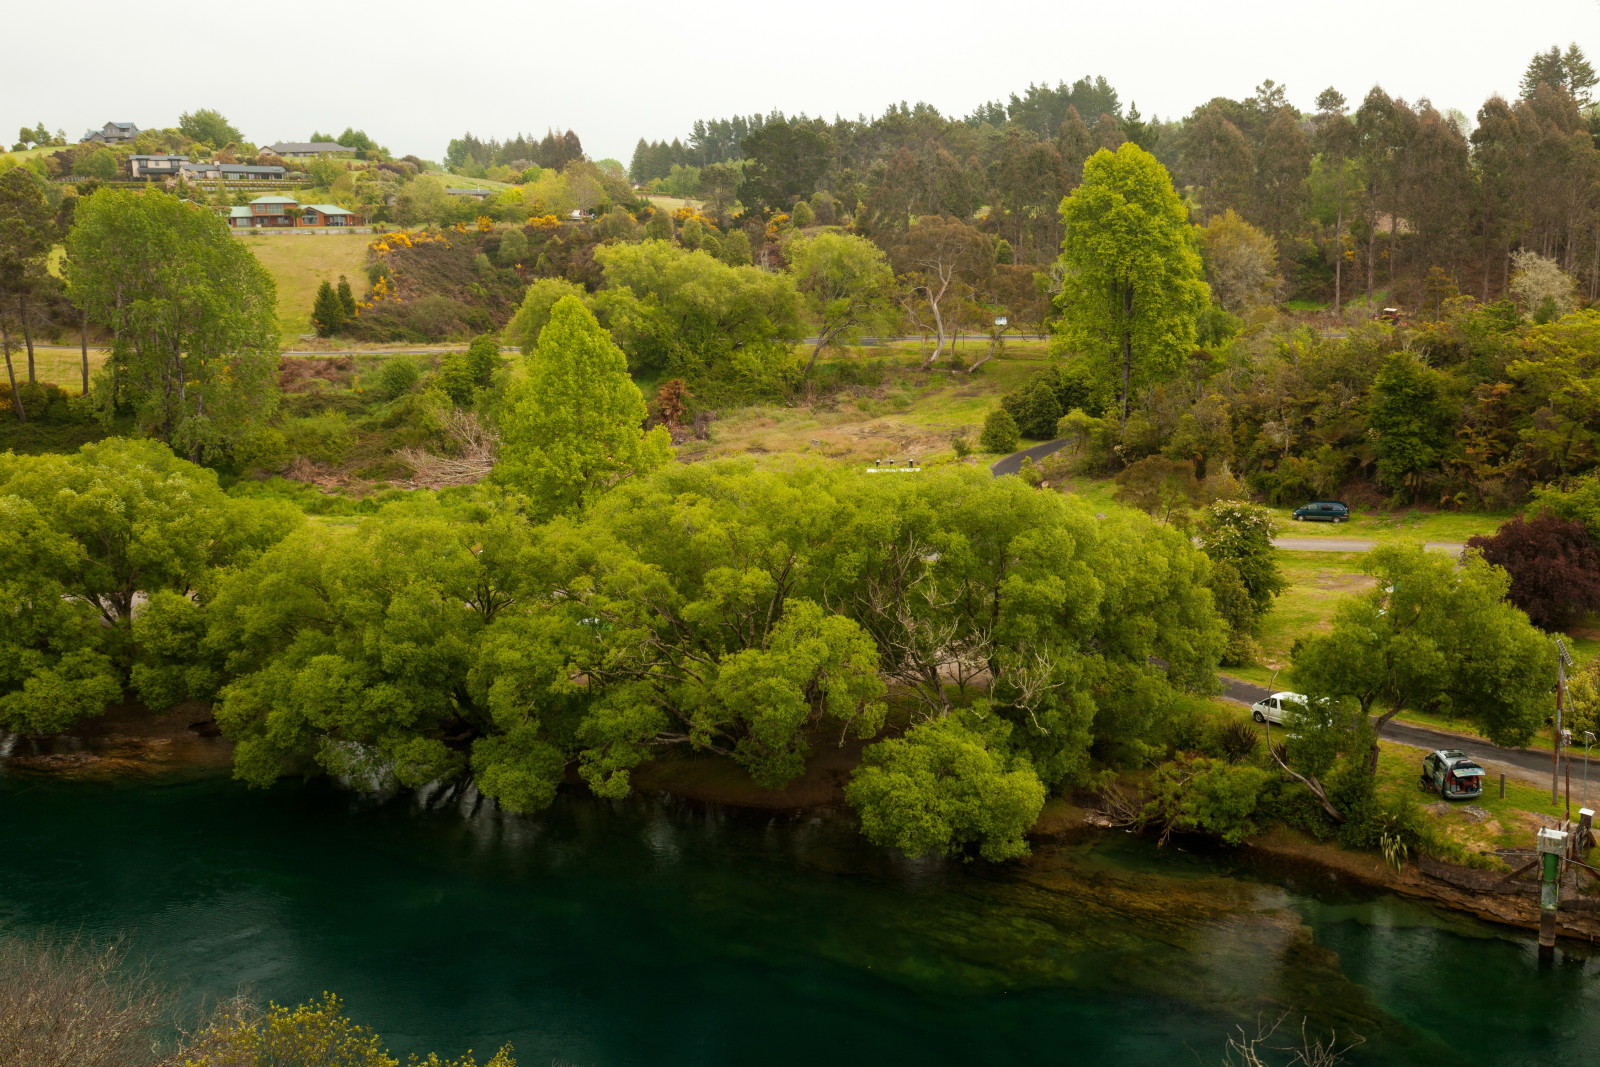 แม่น้ำ, ฝั่งทะเล, ถนน, ต้นไม้, บ้าน, นิวซีแลนด์, Waikato, แม่น้ำไวกาโต